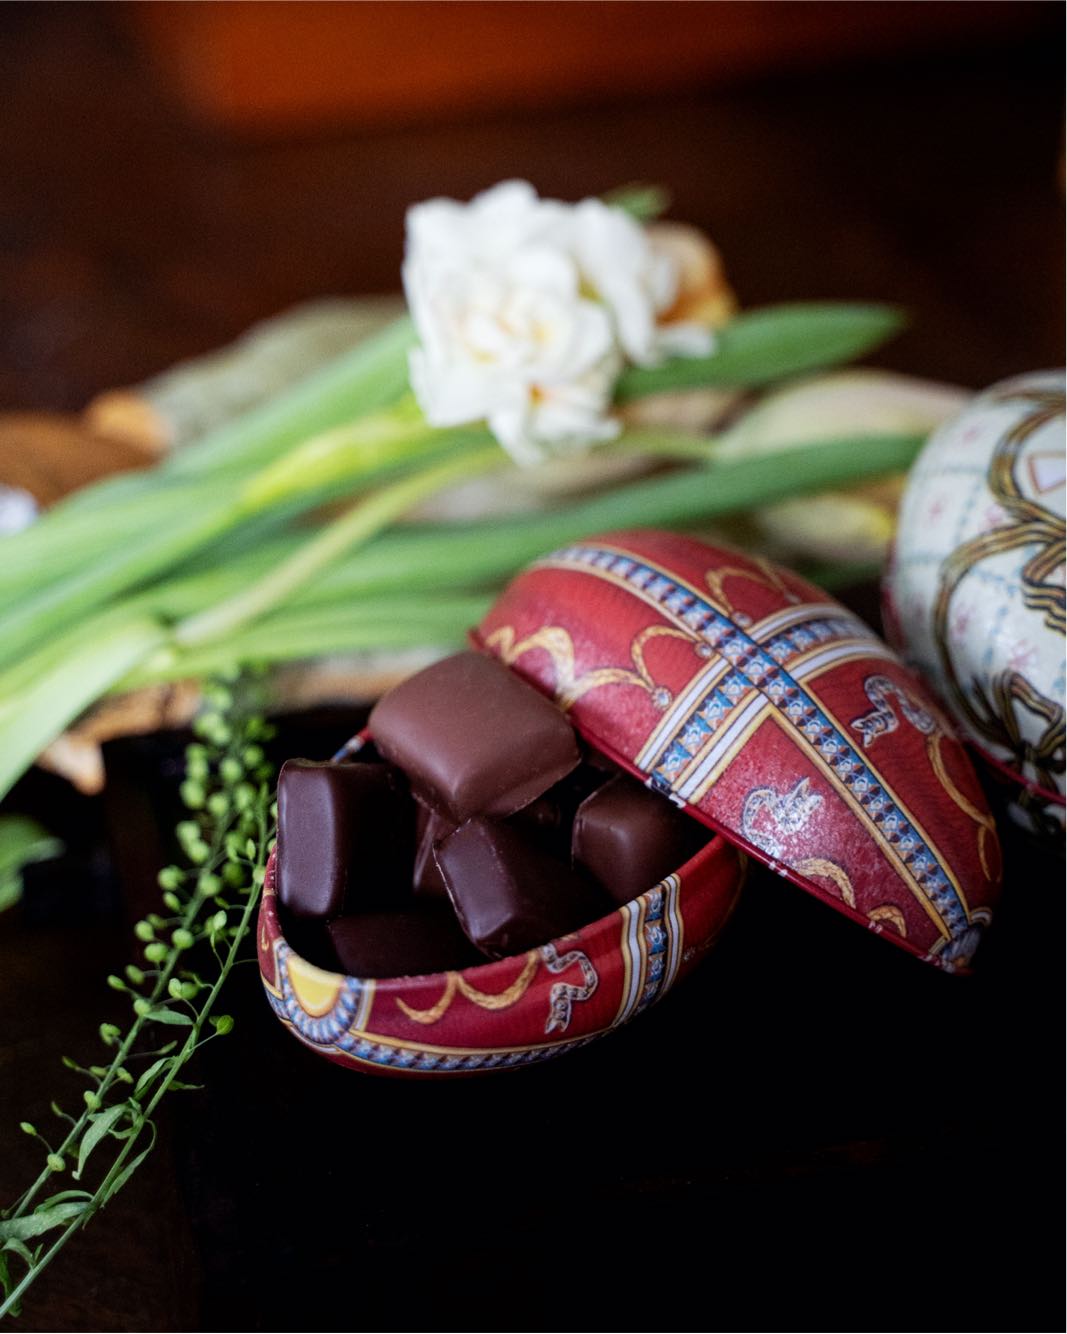 Påskägg med handgjort påskgodis  från chokladfabriken i Skåne